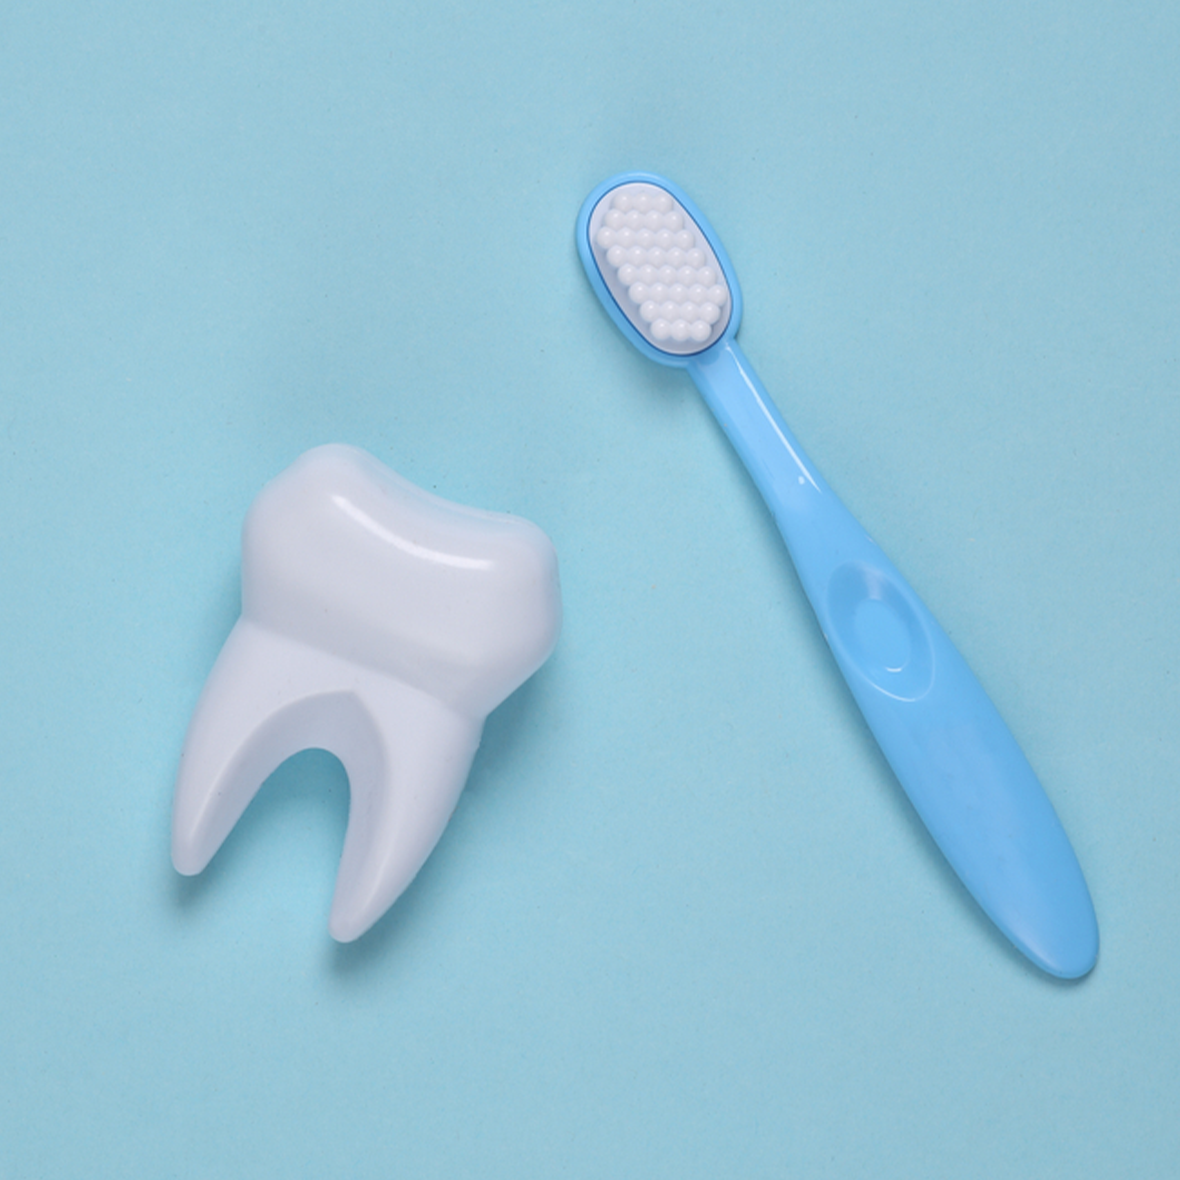 تنظيف الأسنان لدى الطبيب أم في المنزل؟ أيهما أفضل؟